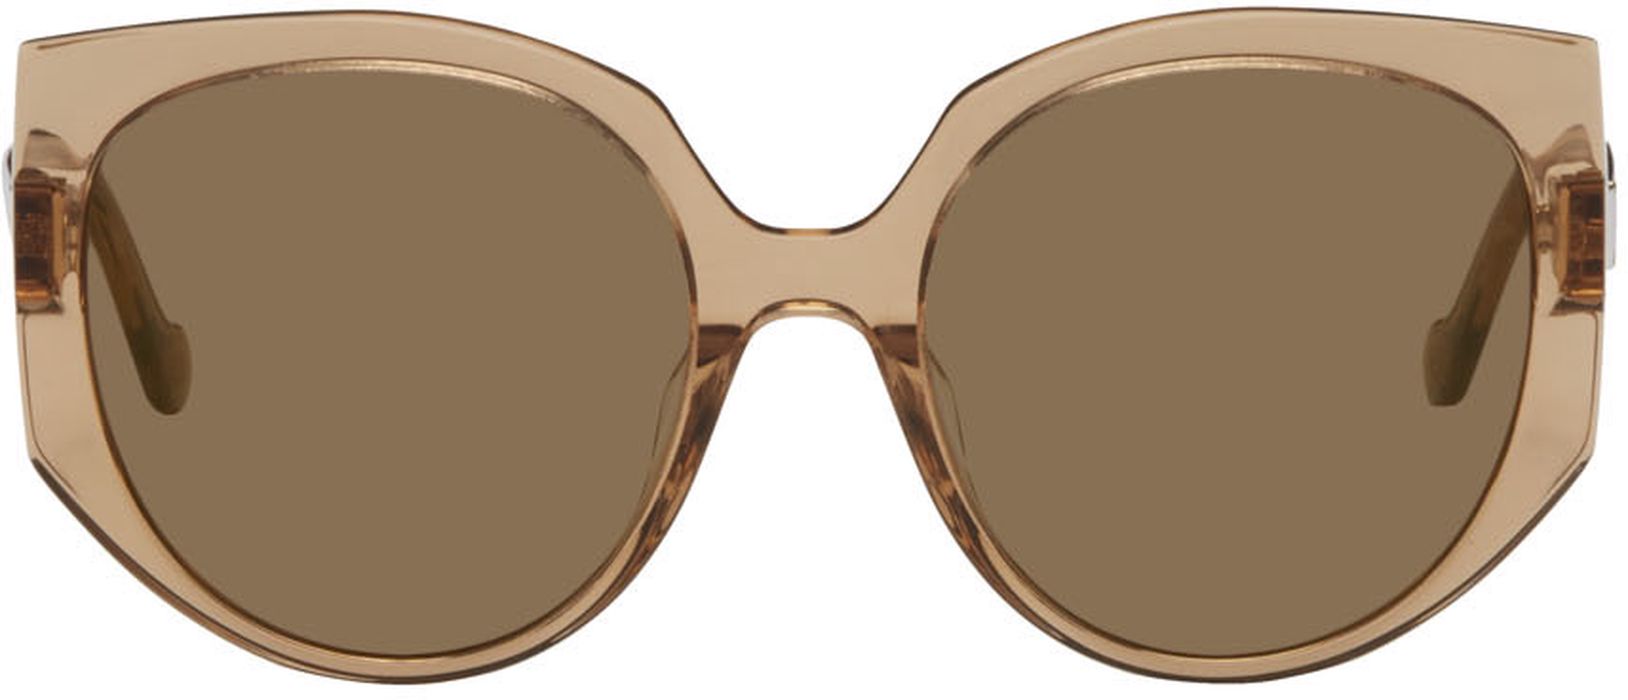 Loewe Brown Butterfly Sunglasses